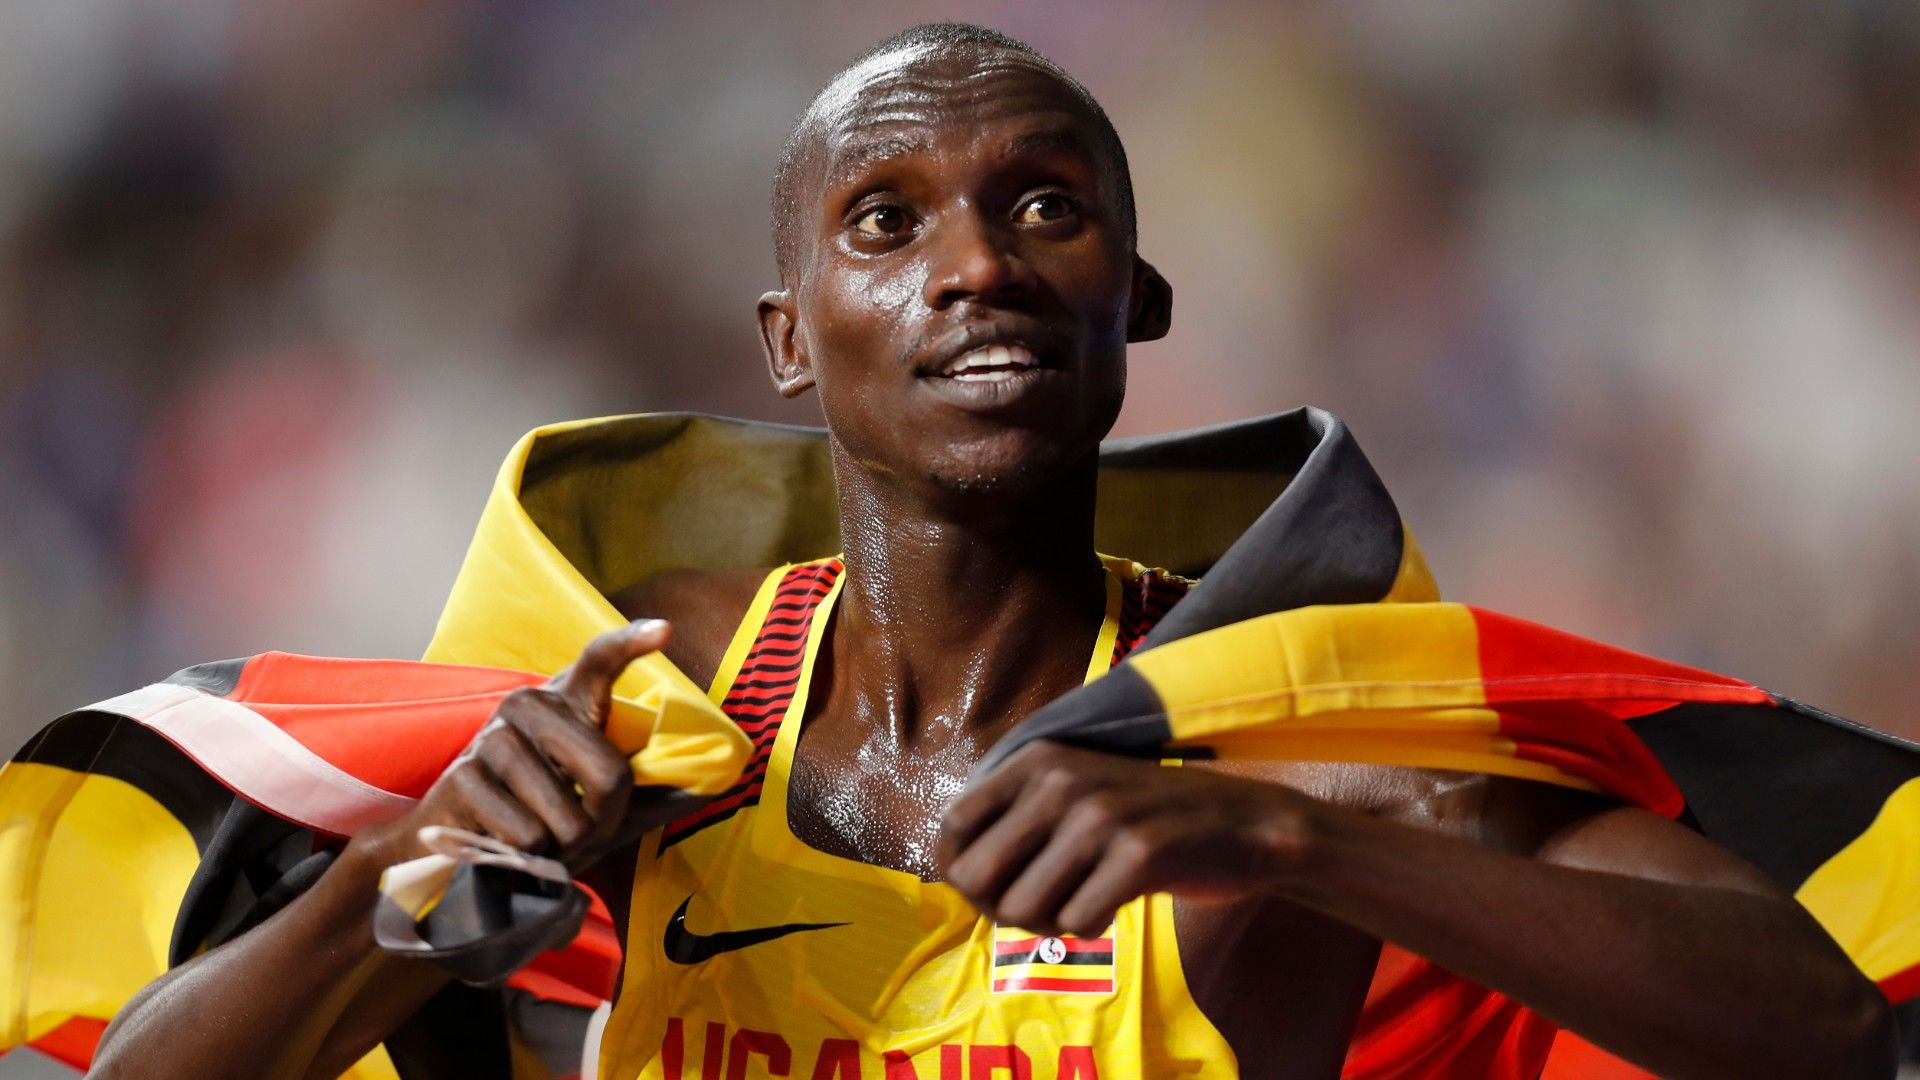 Majdnem fél percet javított a világcsúcson egy ugandai futó